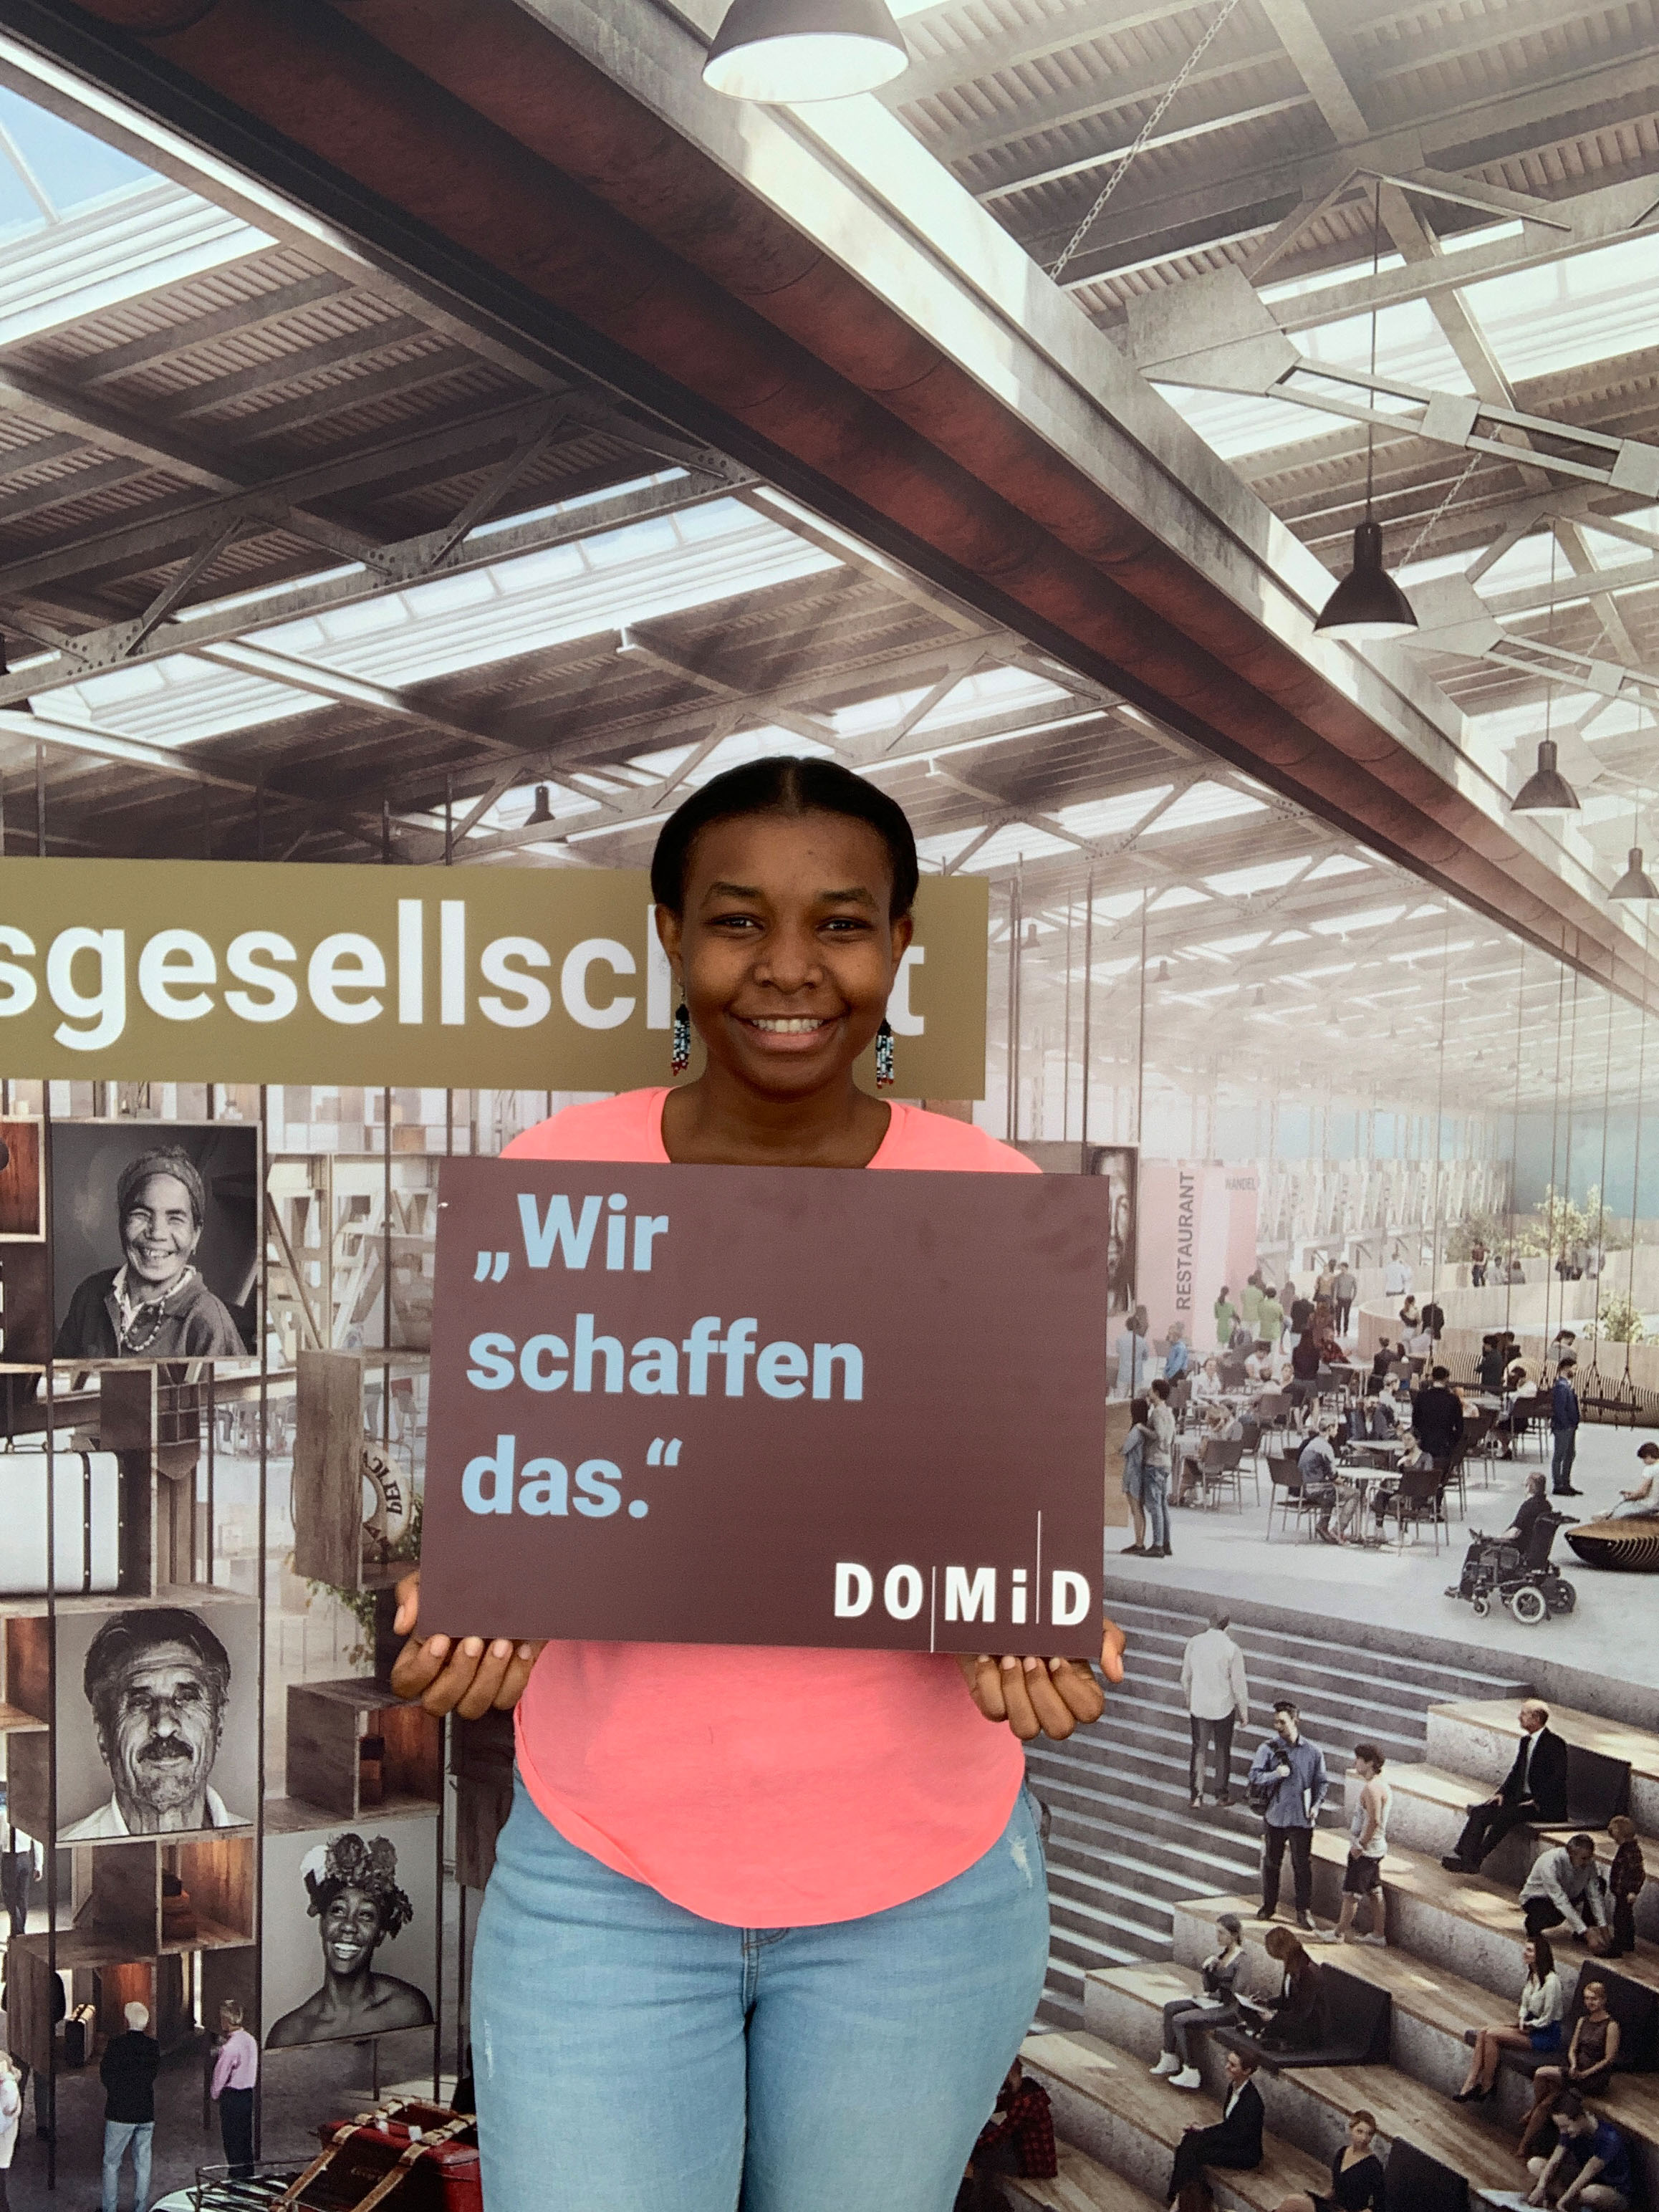 Fotoaktion auf dem Tag der offenen Tür der Bundesregierung für ein zentrales Migrationsmuseum in Deutschland, 17.08.2019, Berlin. Foto: DOMiD-Archiv, Köln